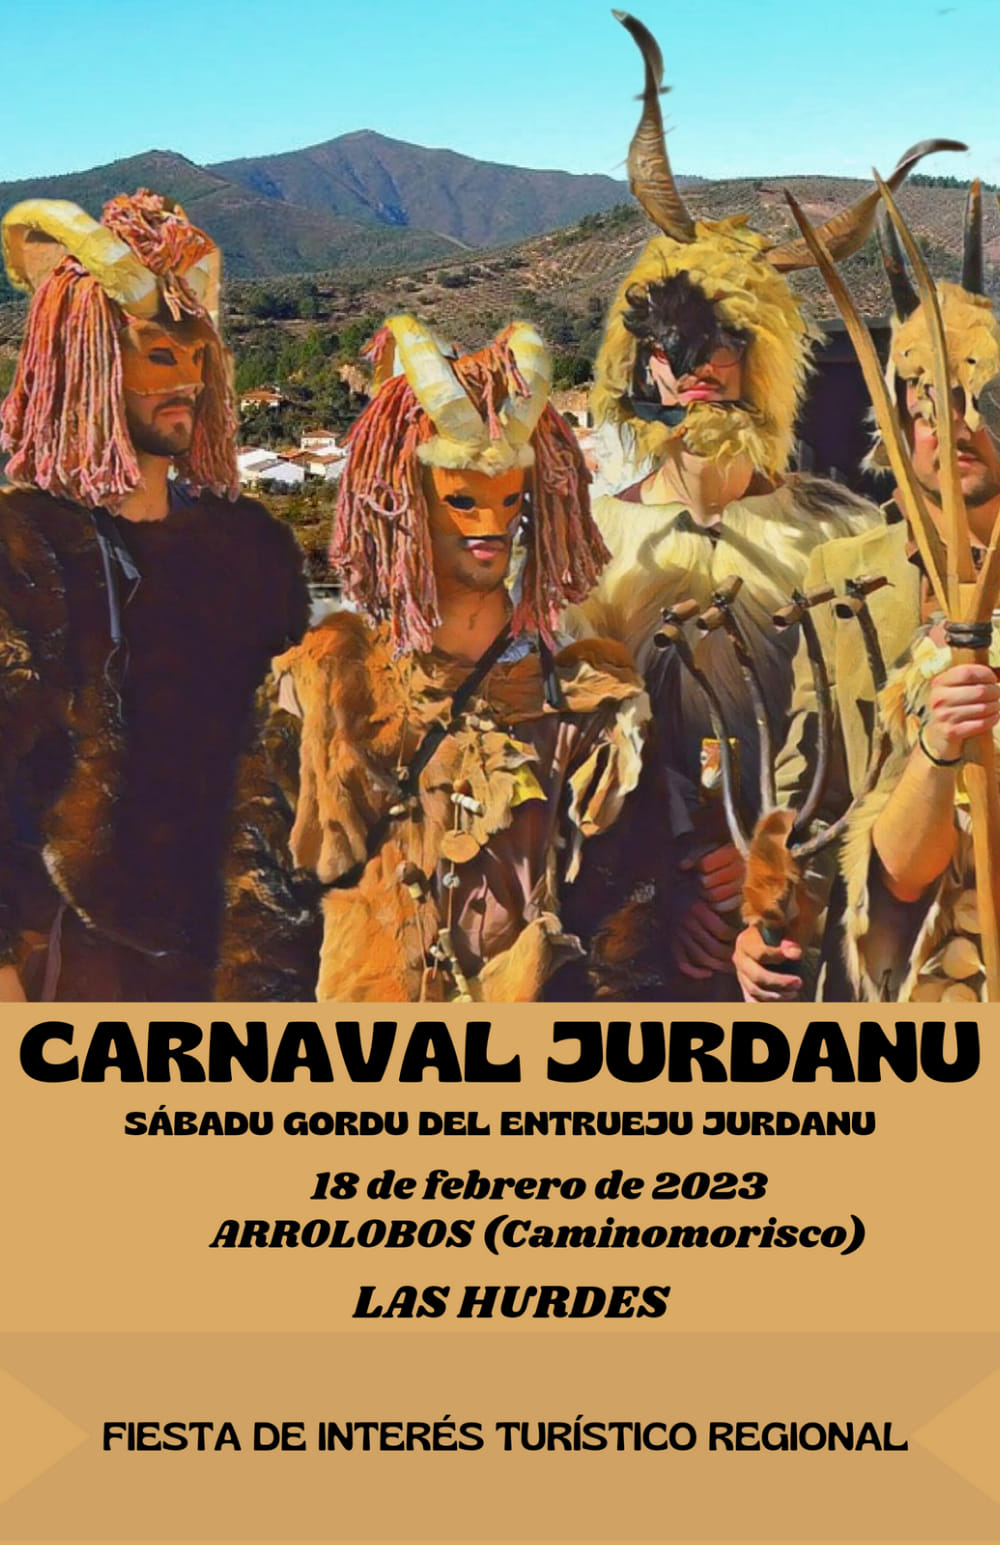 Carnaval hurdano 2023